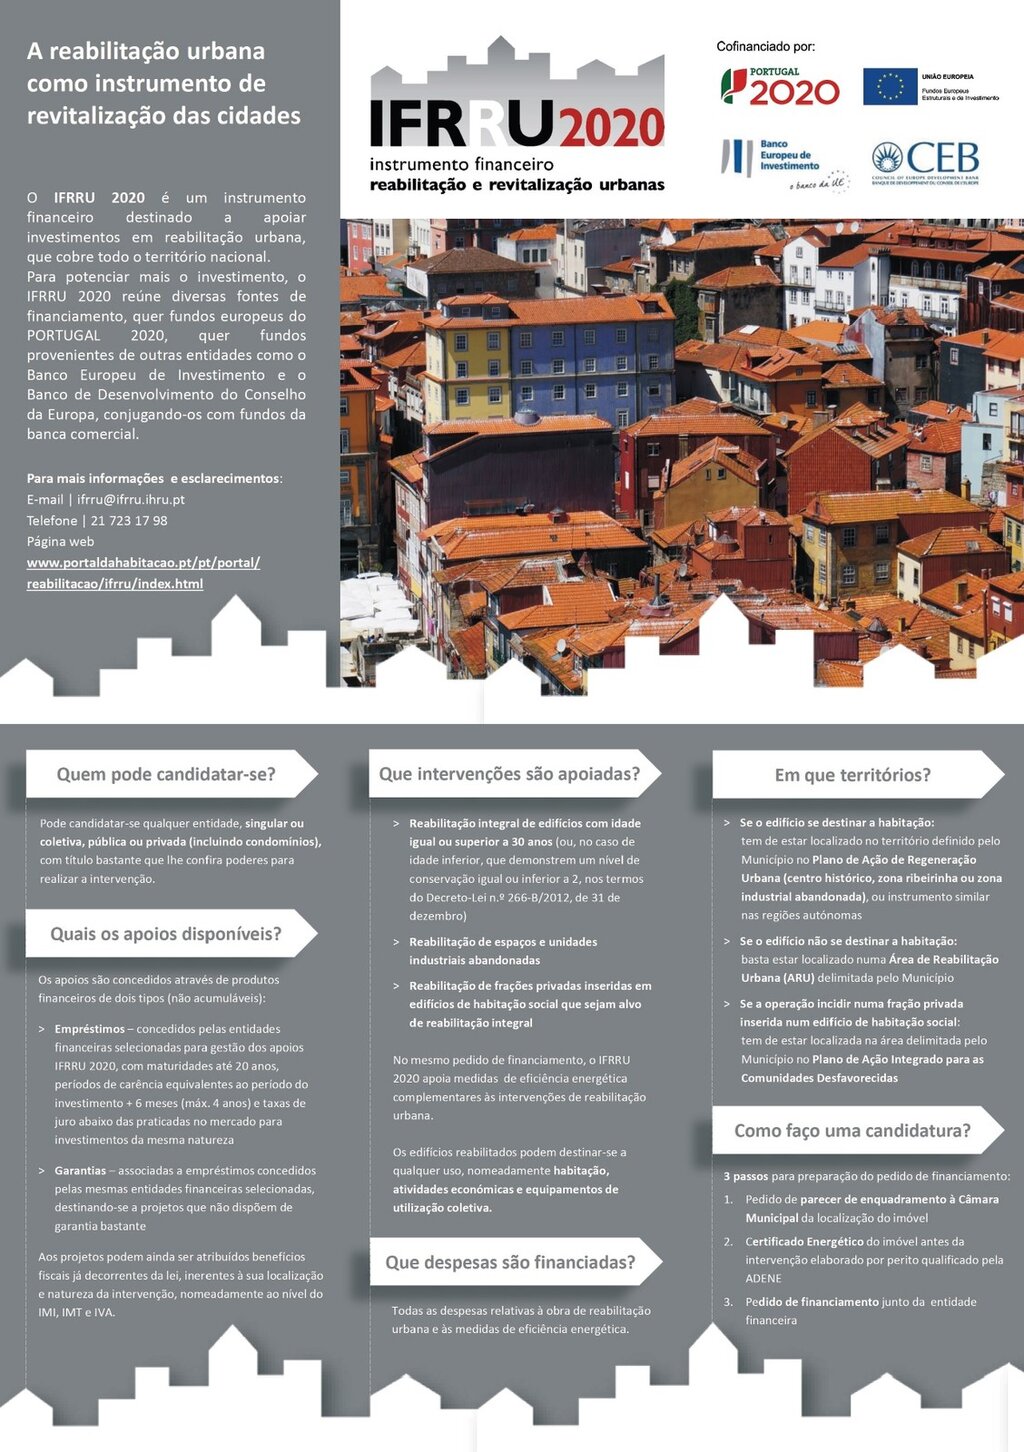 O IFRRU 2020 - Instrumento financeiro para a reabilitação e revitalização urbanas